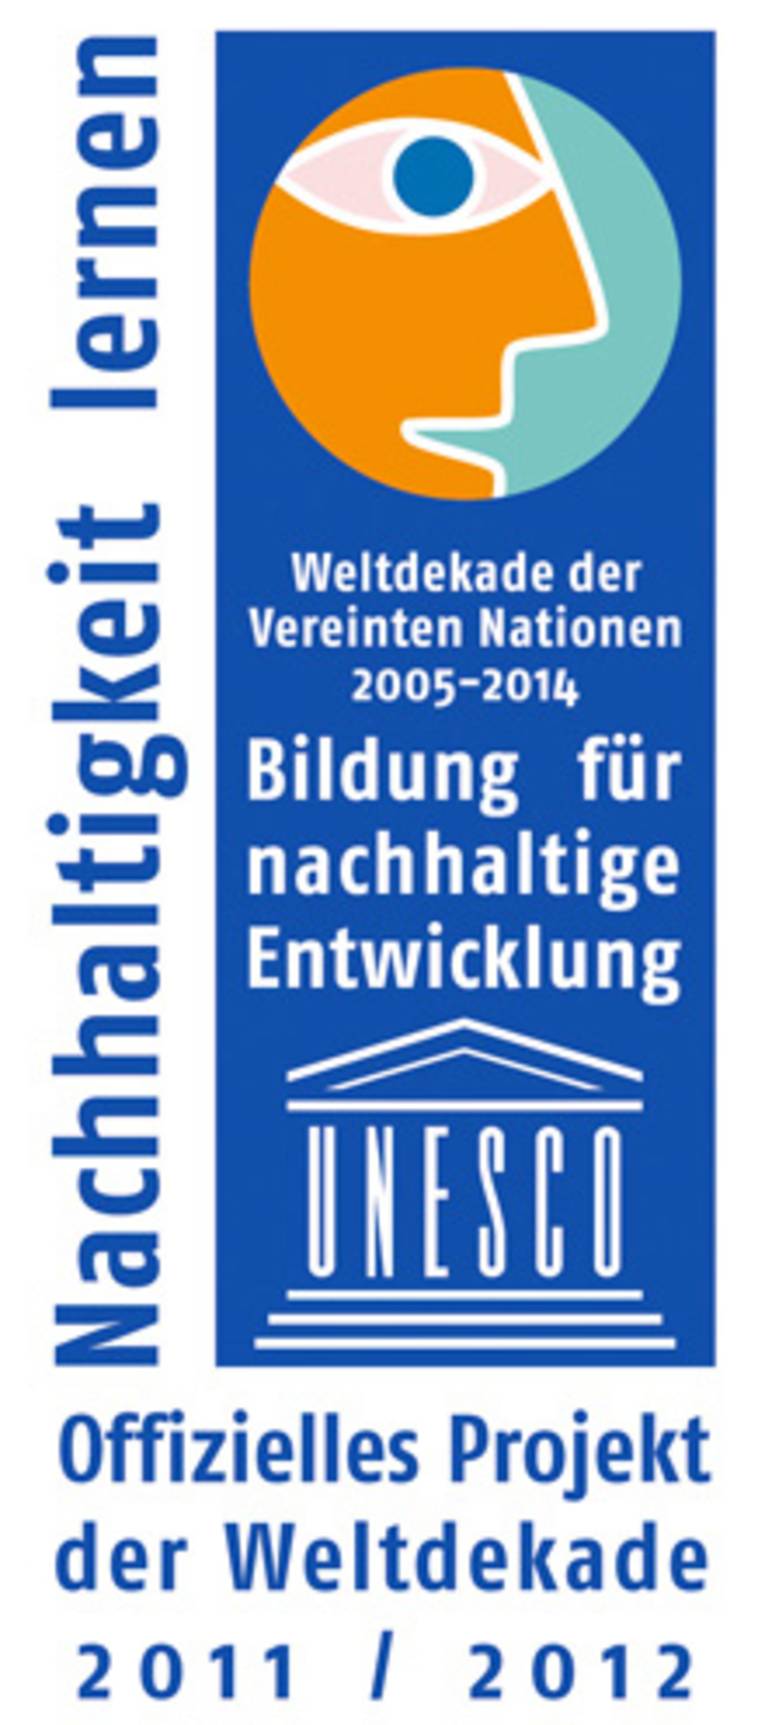 Logo der Vereinten Nationen zum Thema "Nachhaltigkeit lernen" - Bildung für nachhaltige Entwicklung